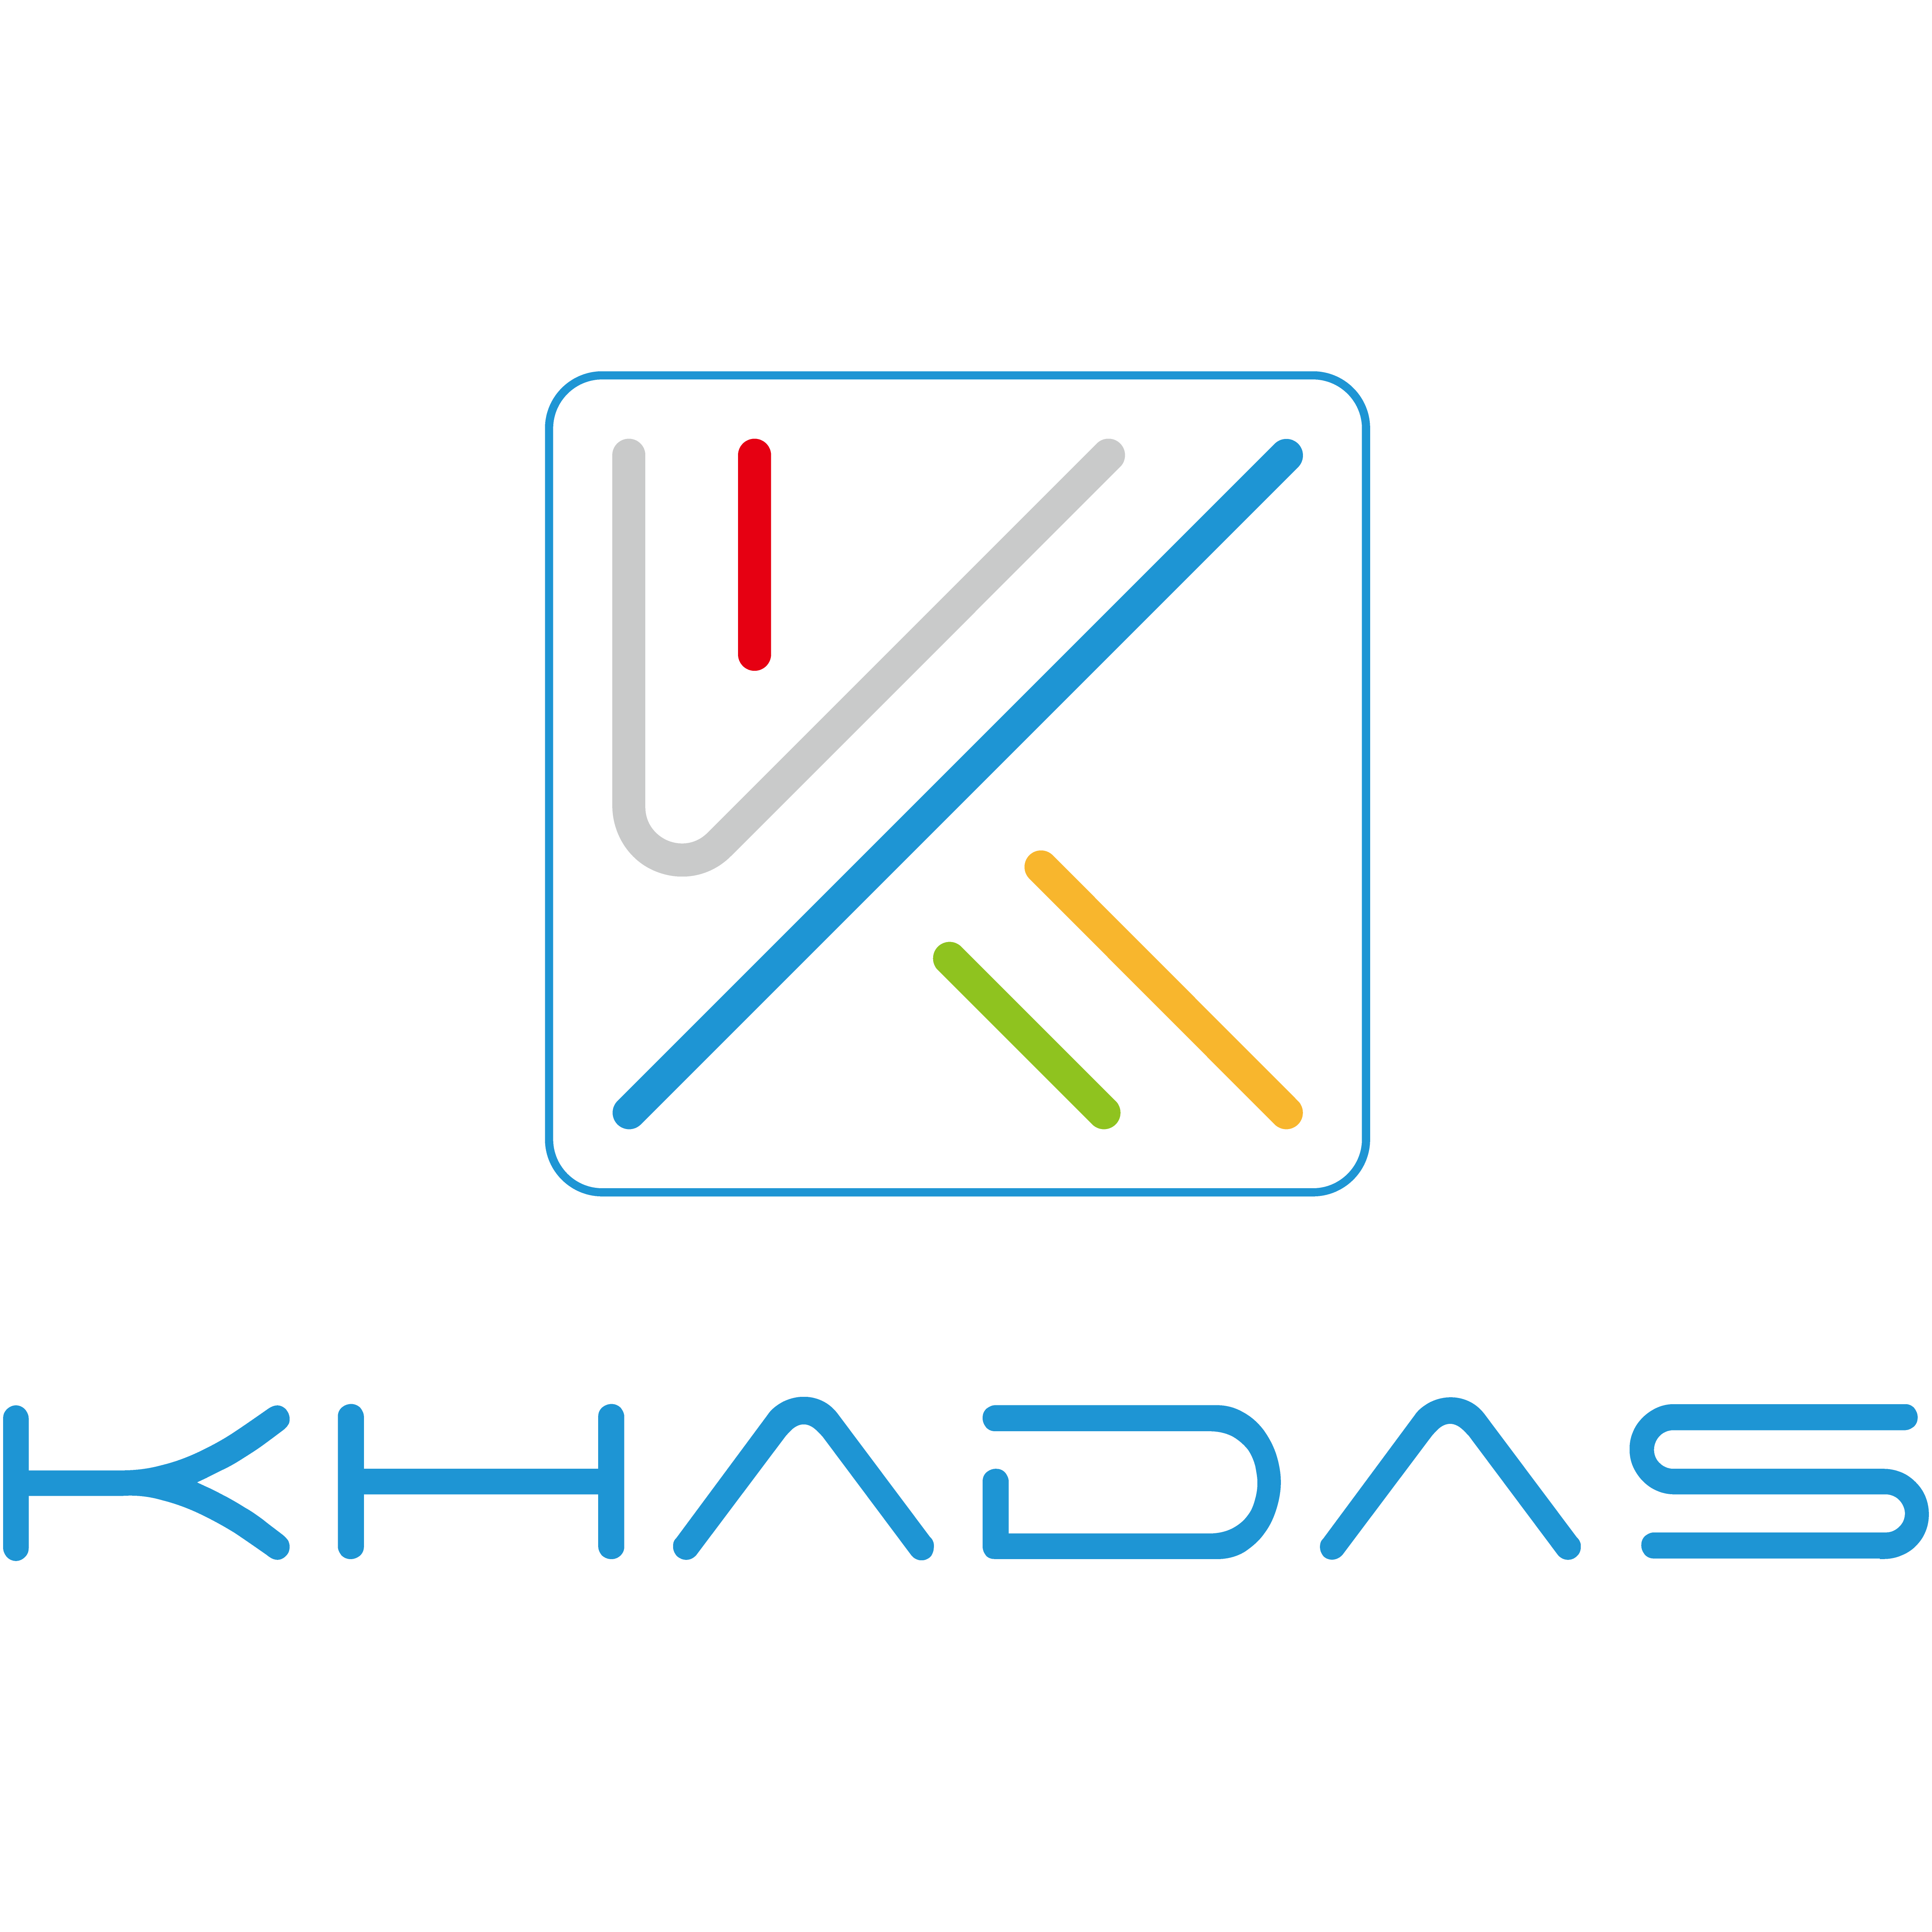 Khadas TEA